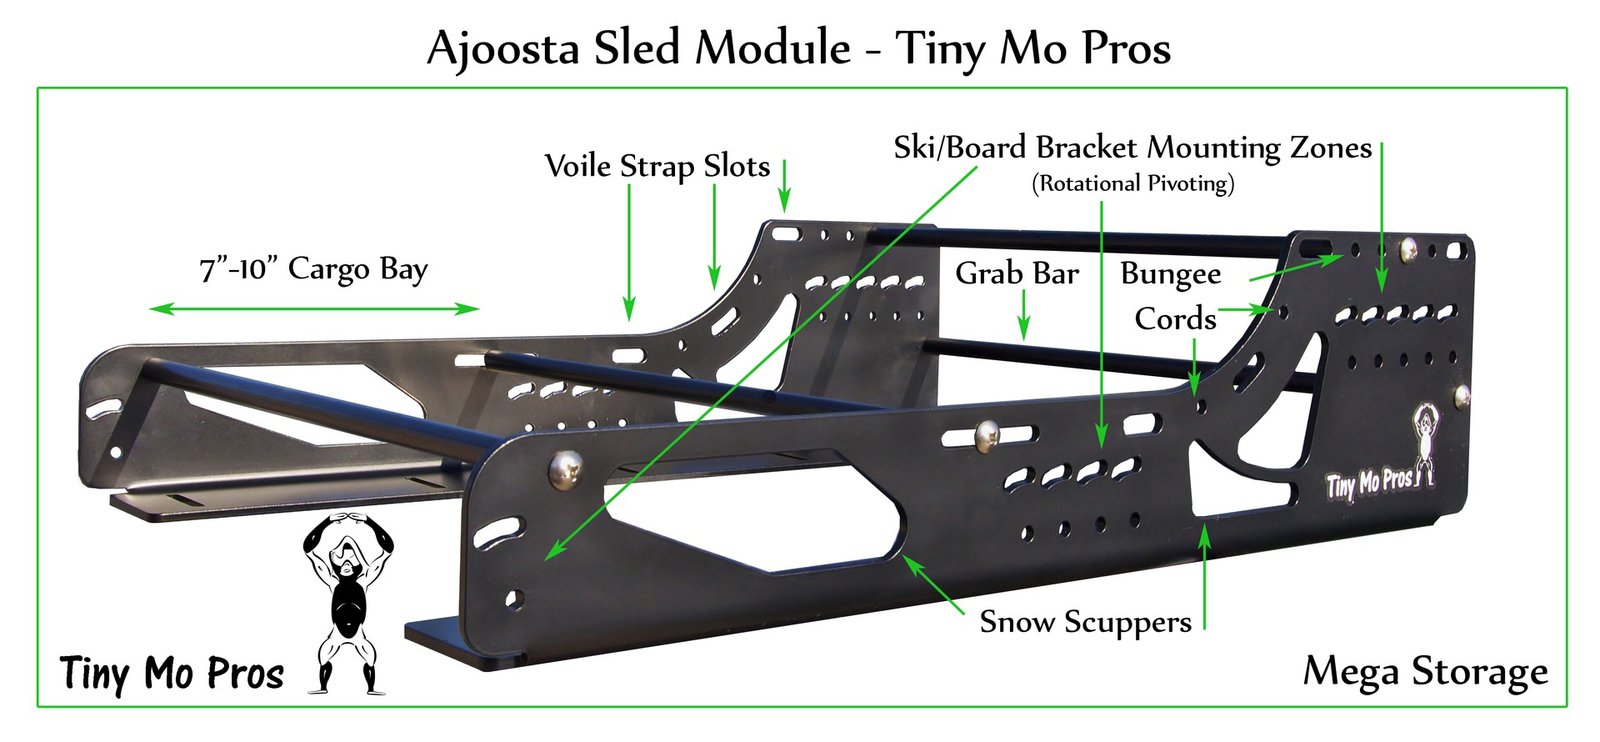 Ajoosta Sled Module Ski Racks - Tiny Mo Pros